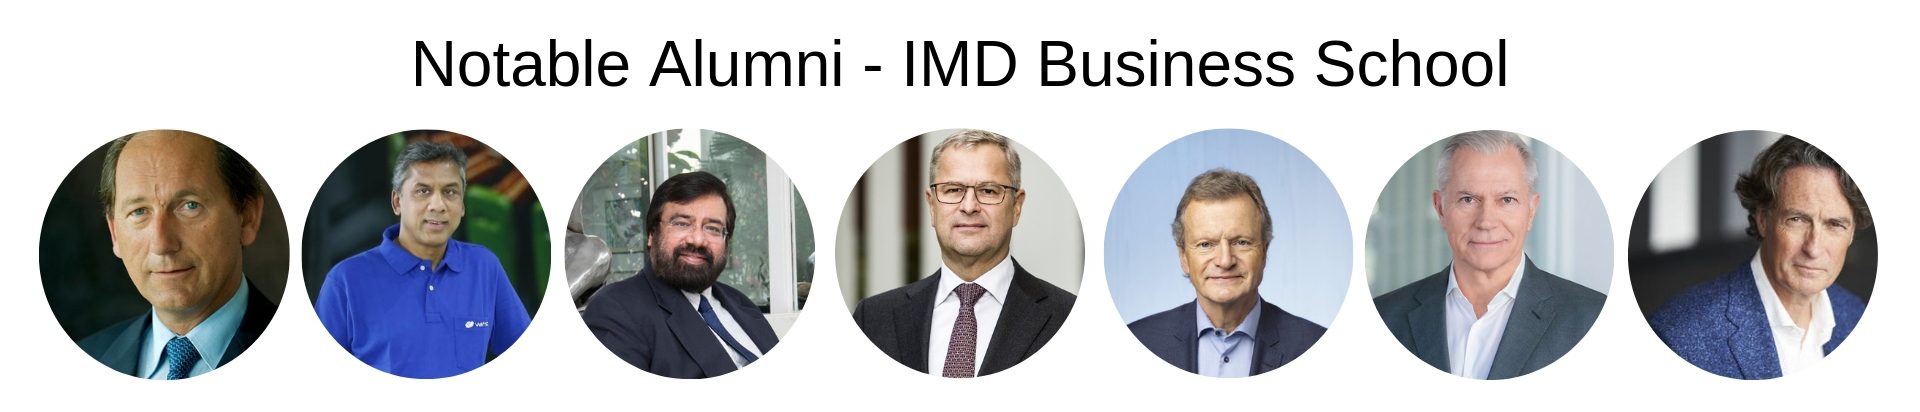 IMD Business School - IMD MBA Program - Notable Alumni